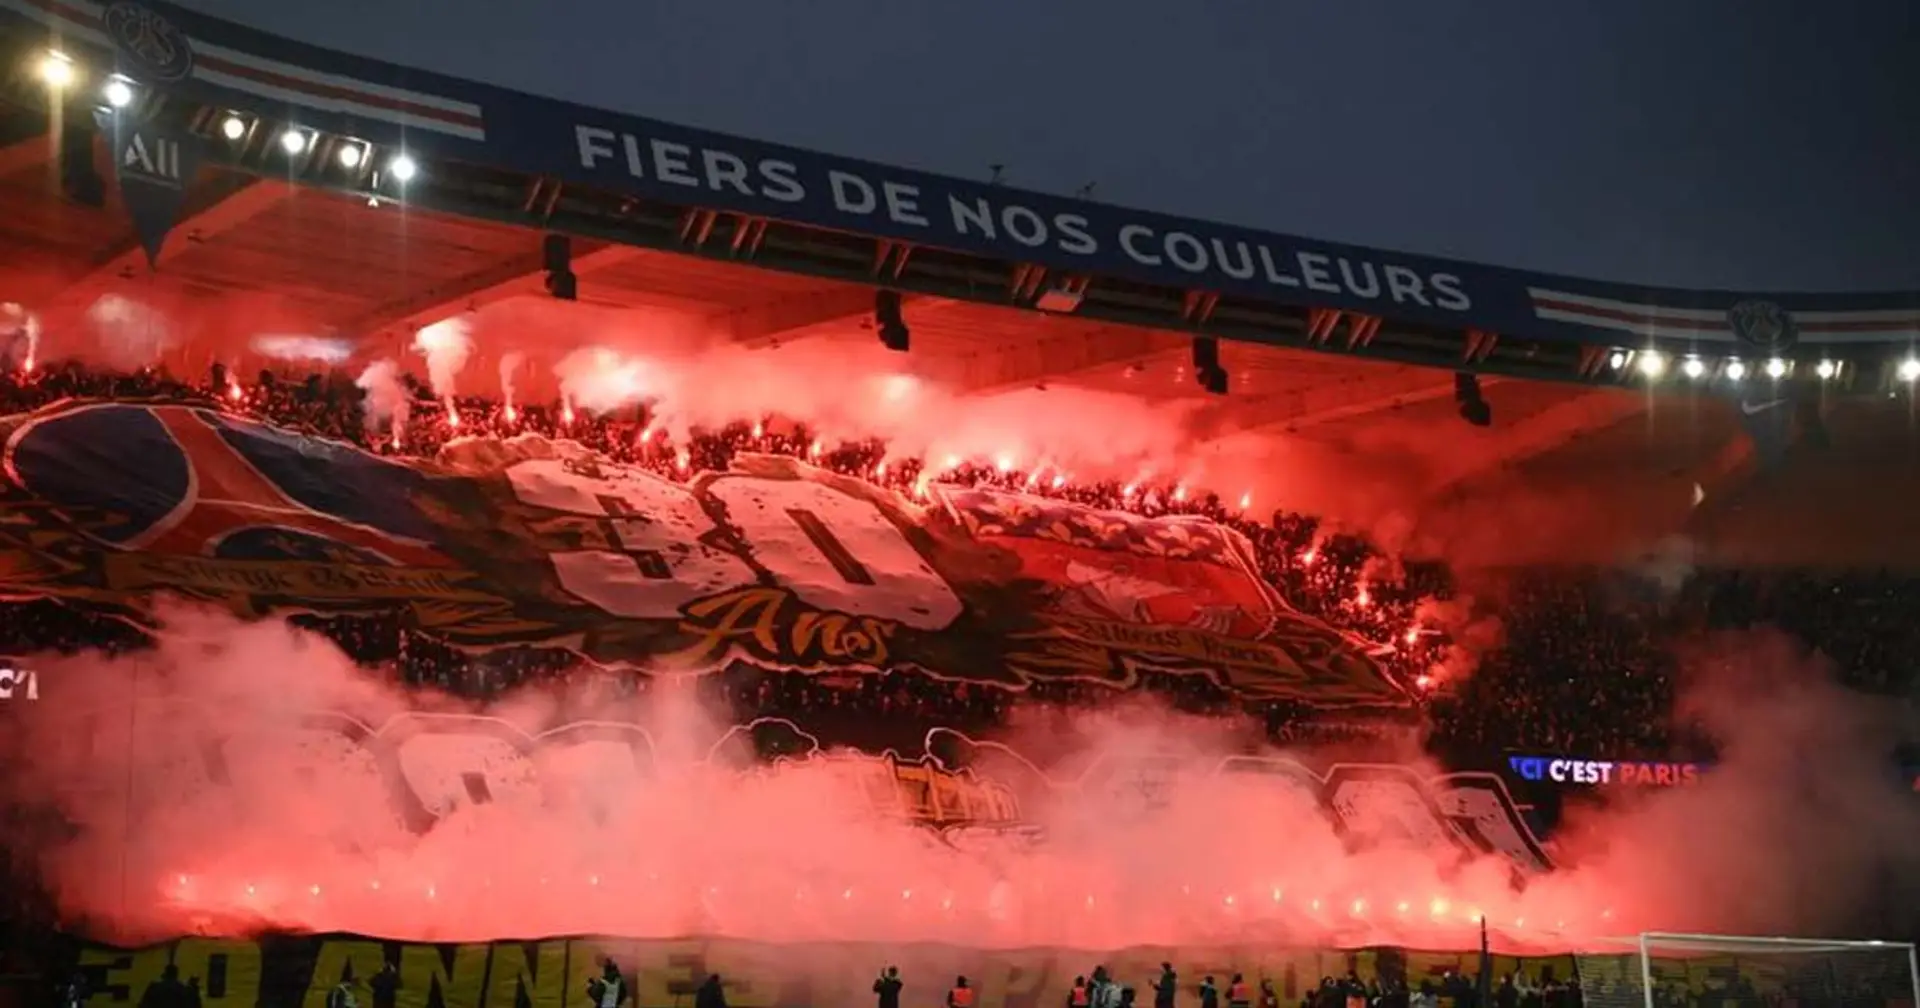 Le PSG risque de lourdes sanctions à causes des fumigènes allumés dans la tribune Auteuil face à Nantes 